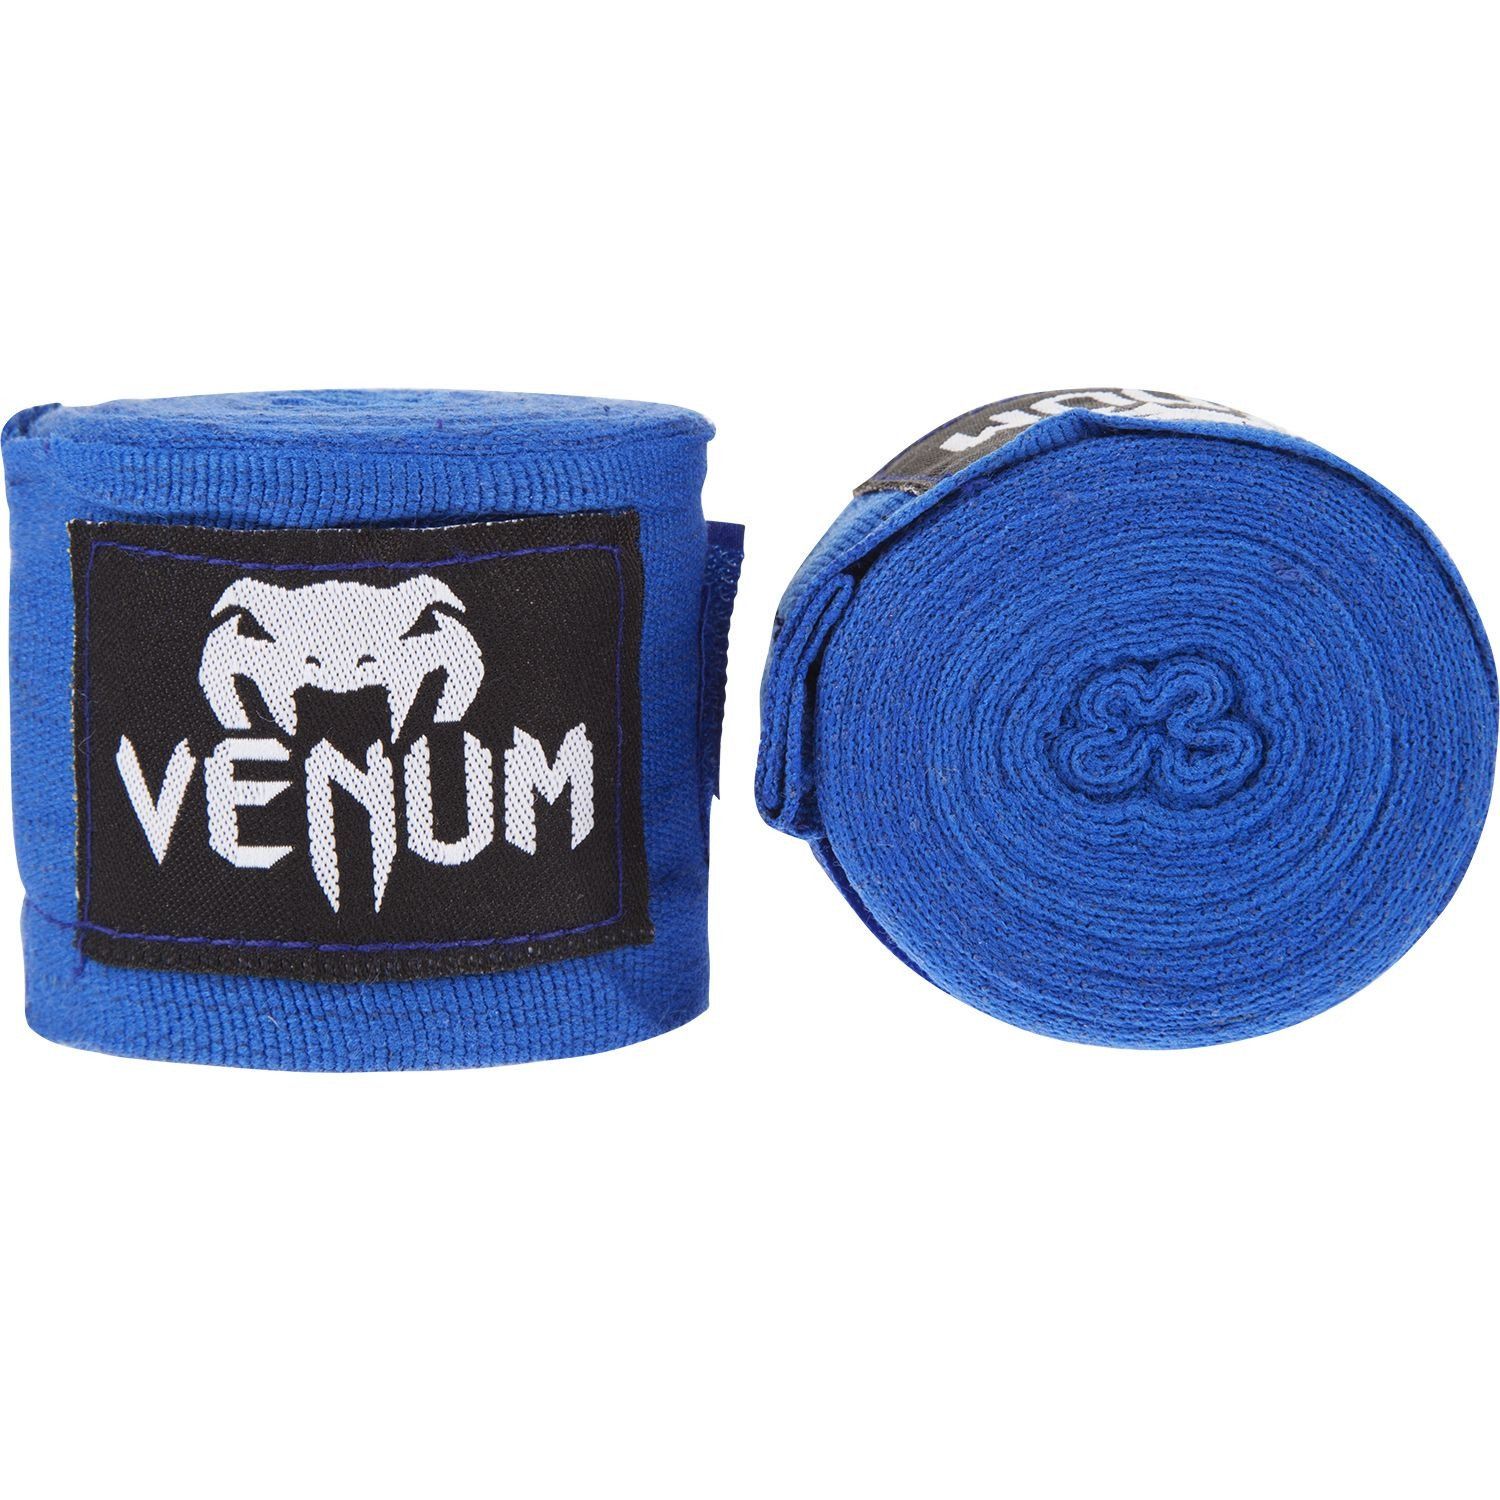 Bandages de Boxe Venum Kontact - Original - 4 mètres (4 coloris) - Bleu